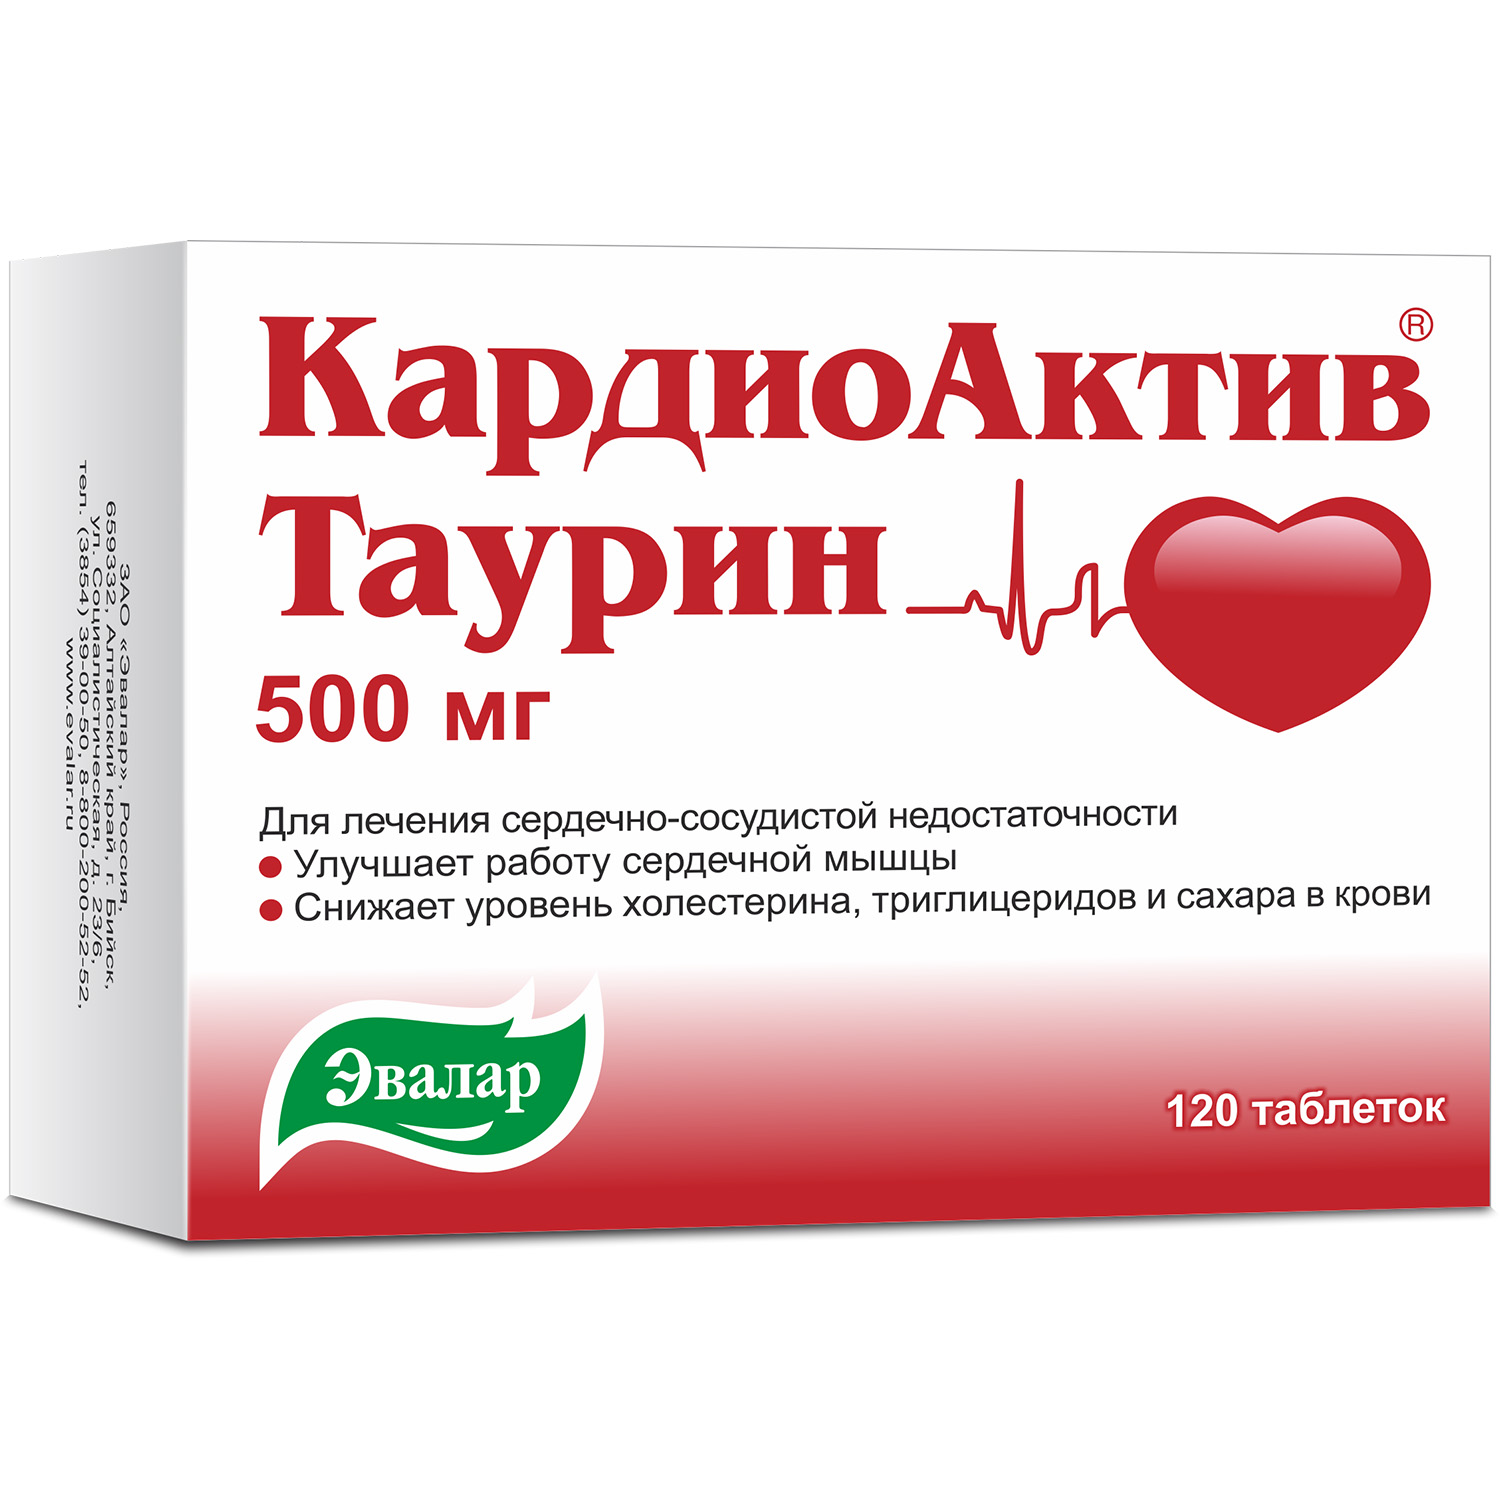 КардиоАктив таурин таб. 500мг №120 кардиоактив таурин таблетки 500 мг 120 шт